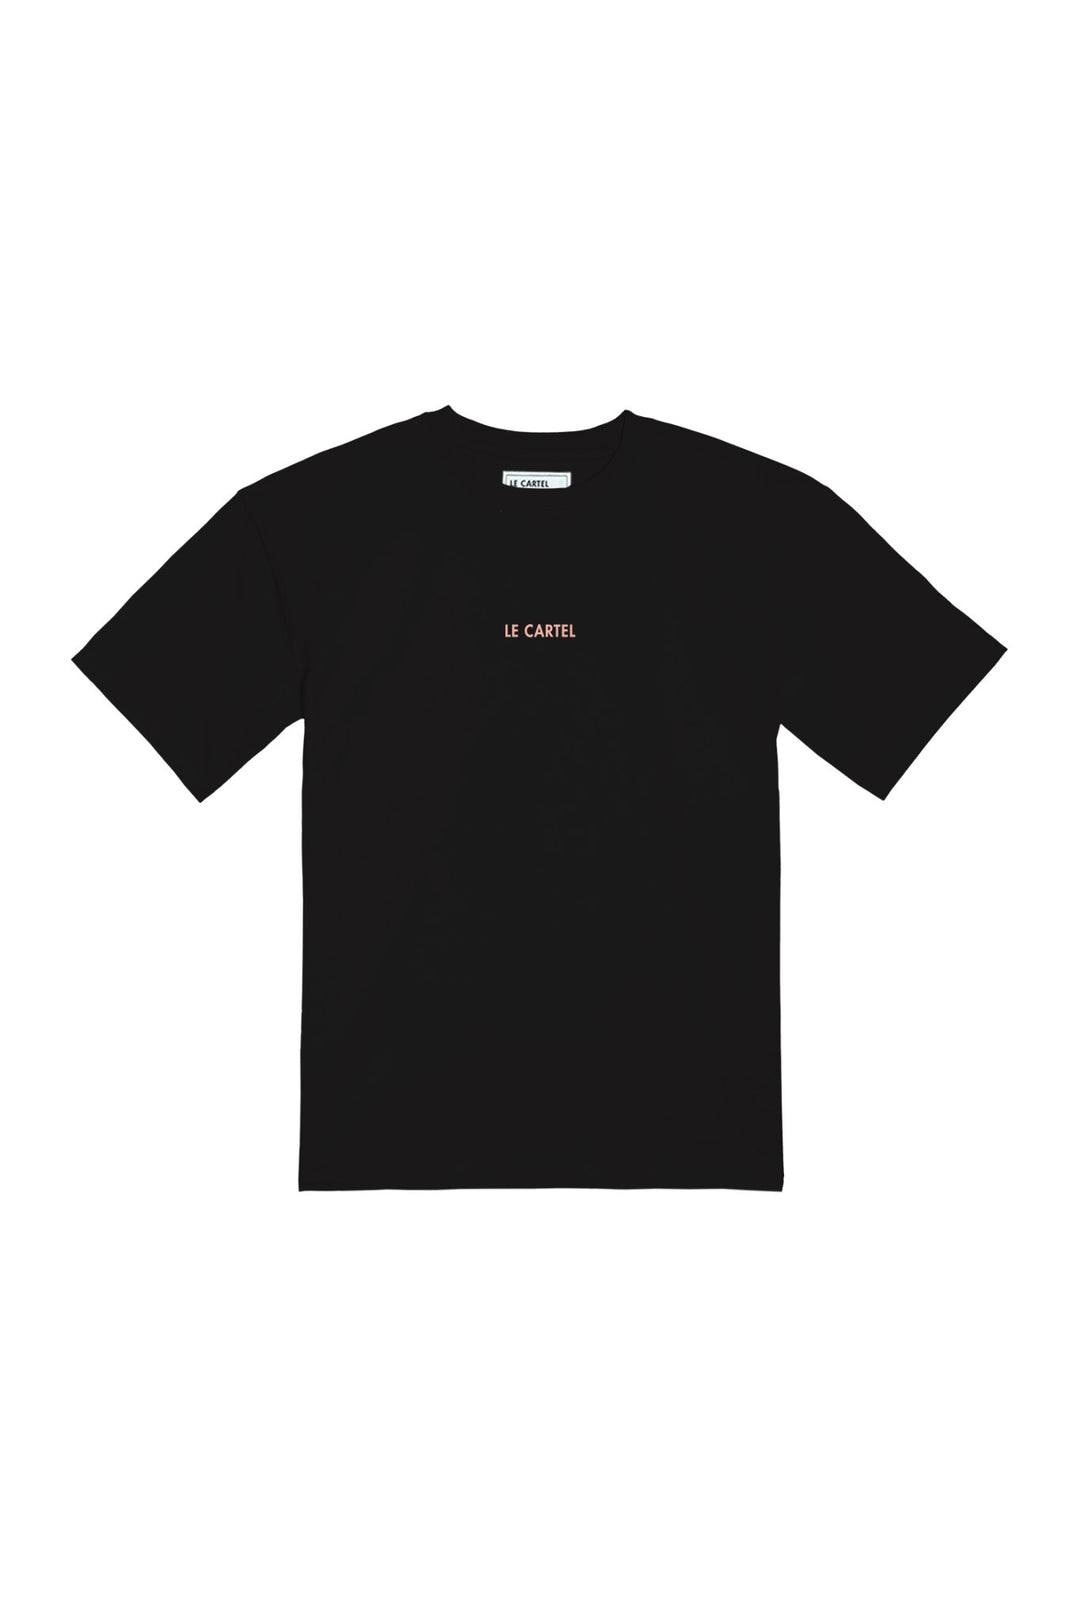 PTIT CRISS・T-shirt unisexe・Noir - Le Cartel